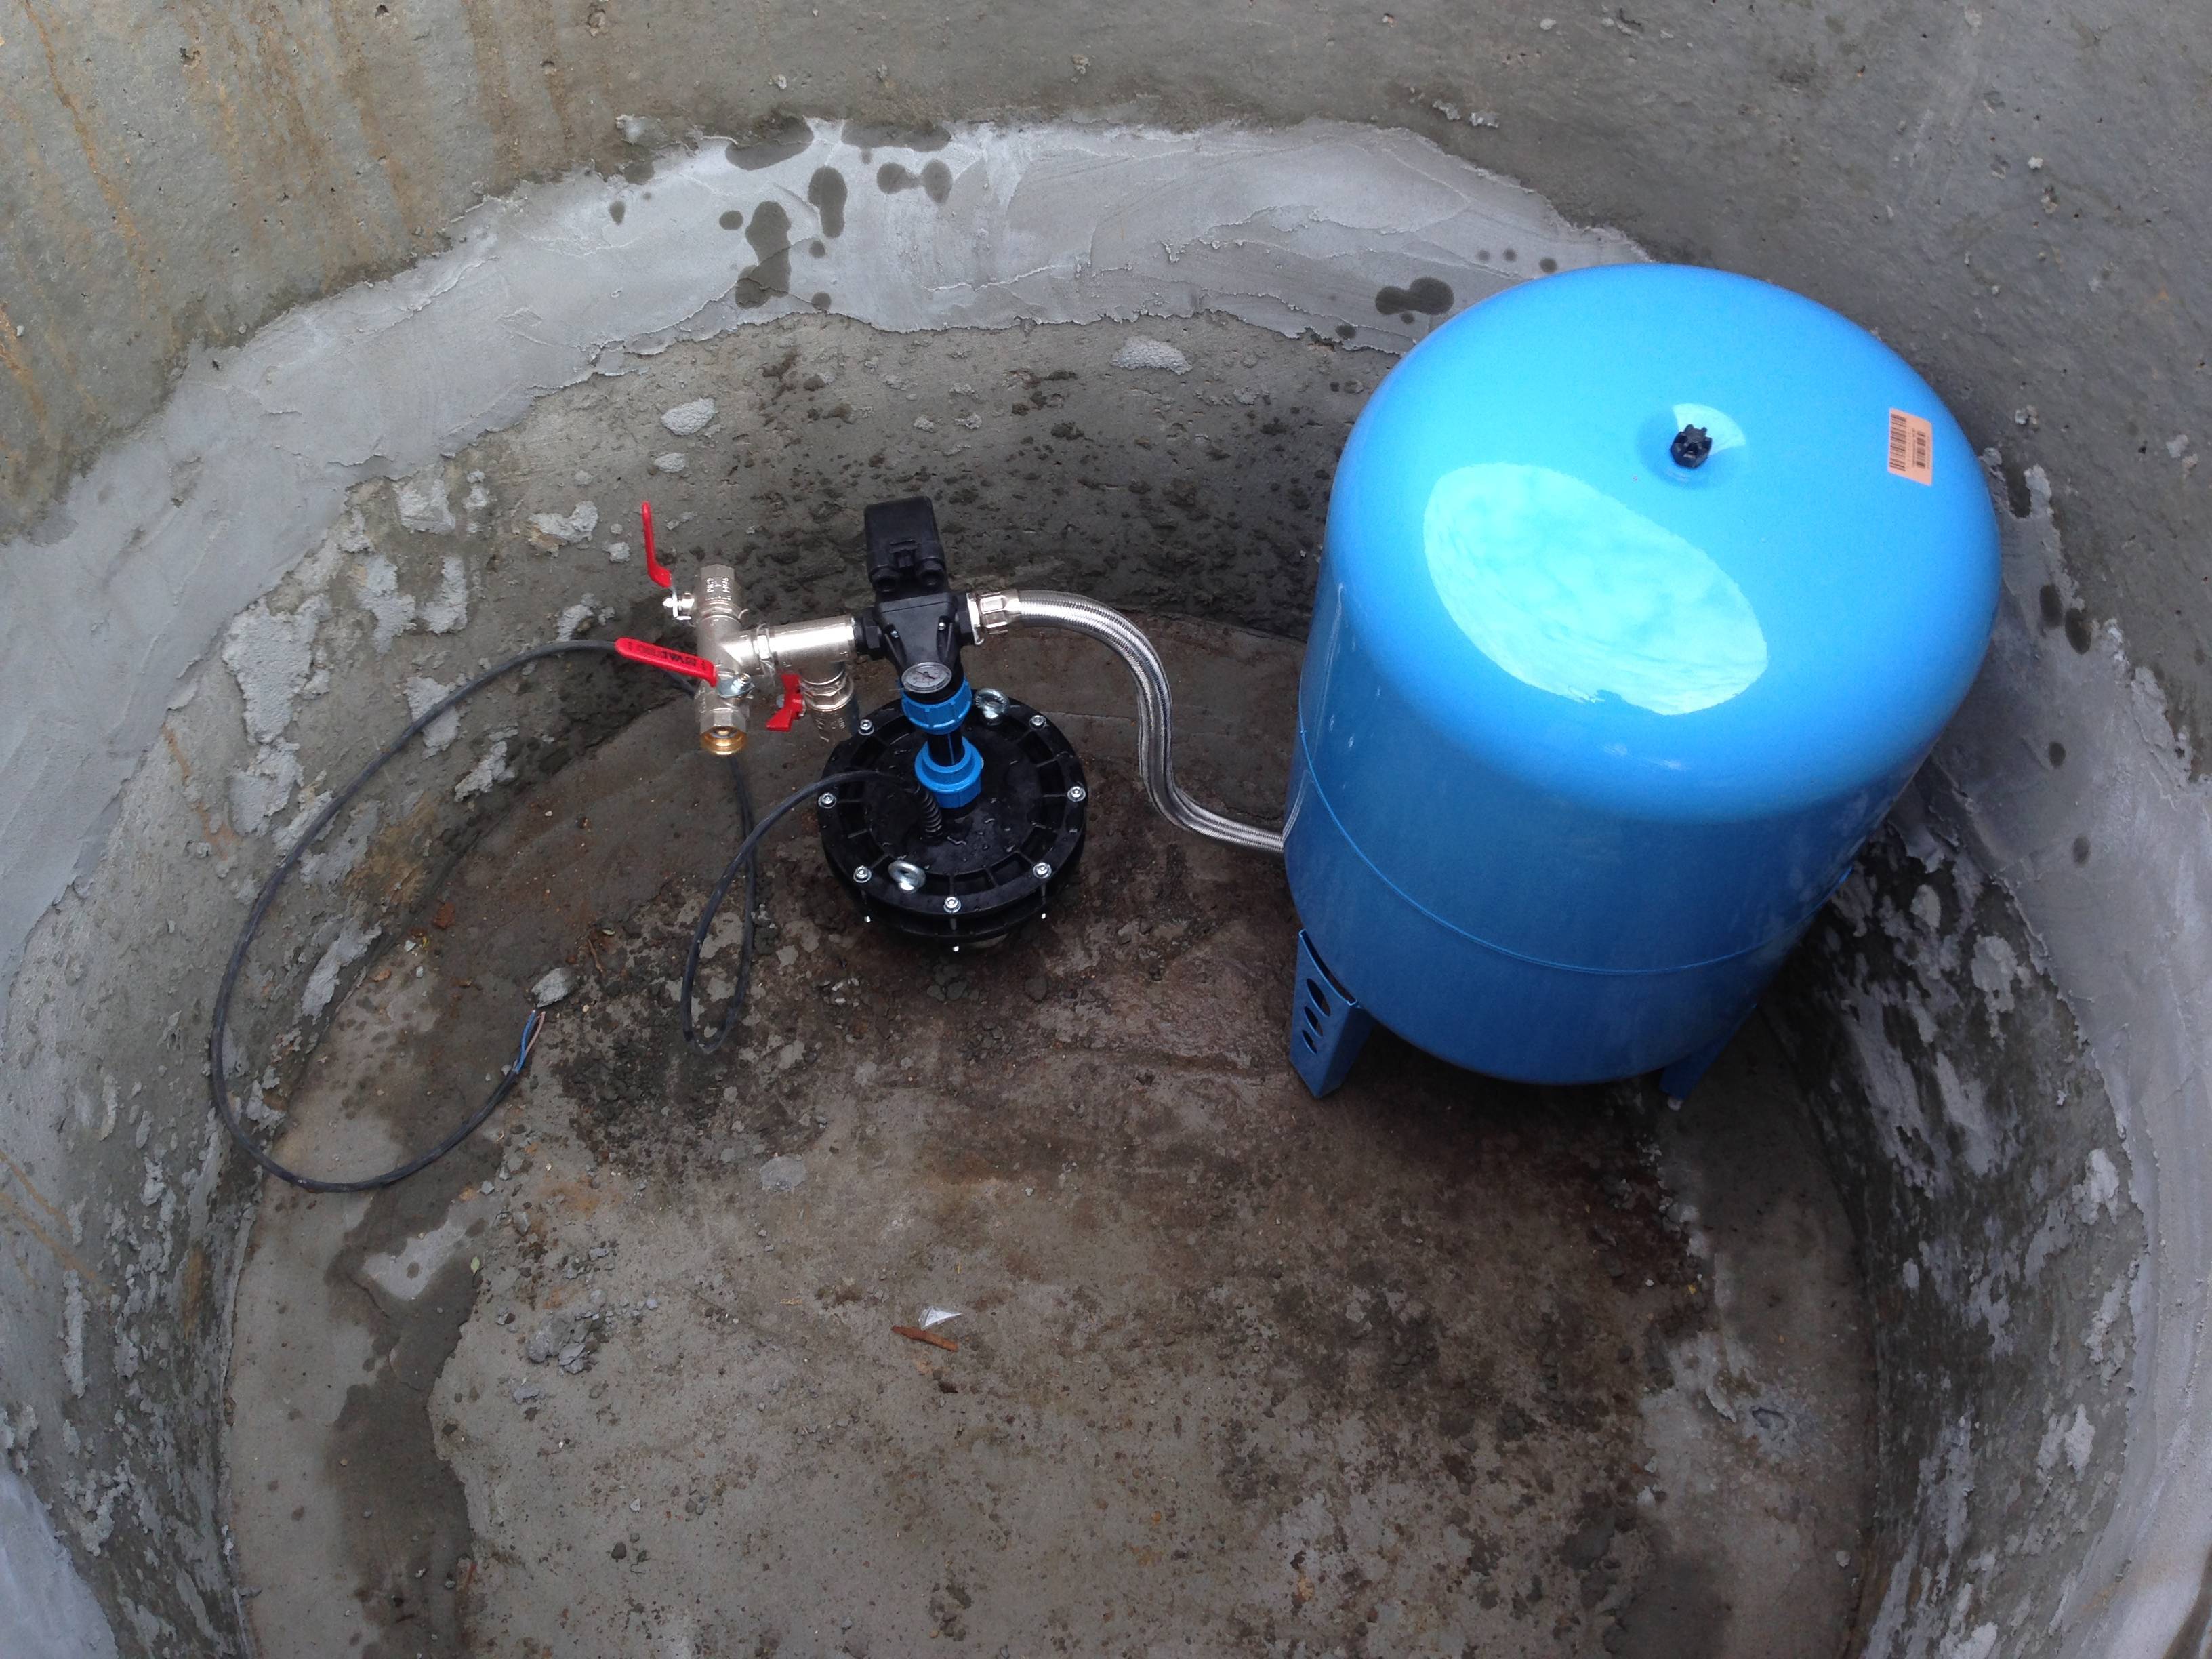 Обустройство скважины на воду: способы и подбор оборудования